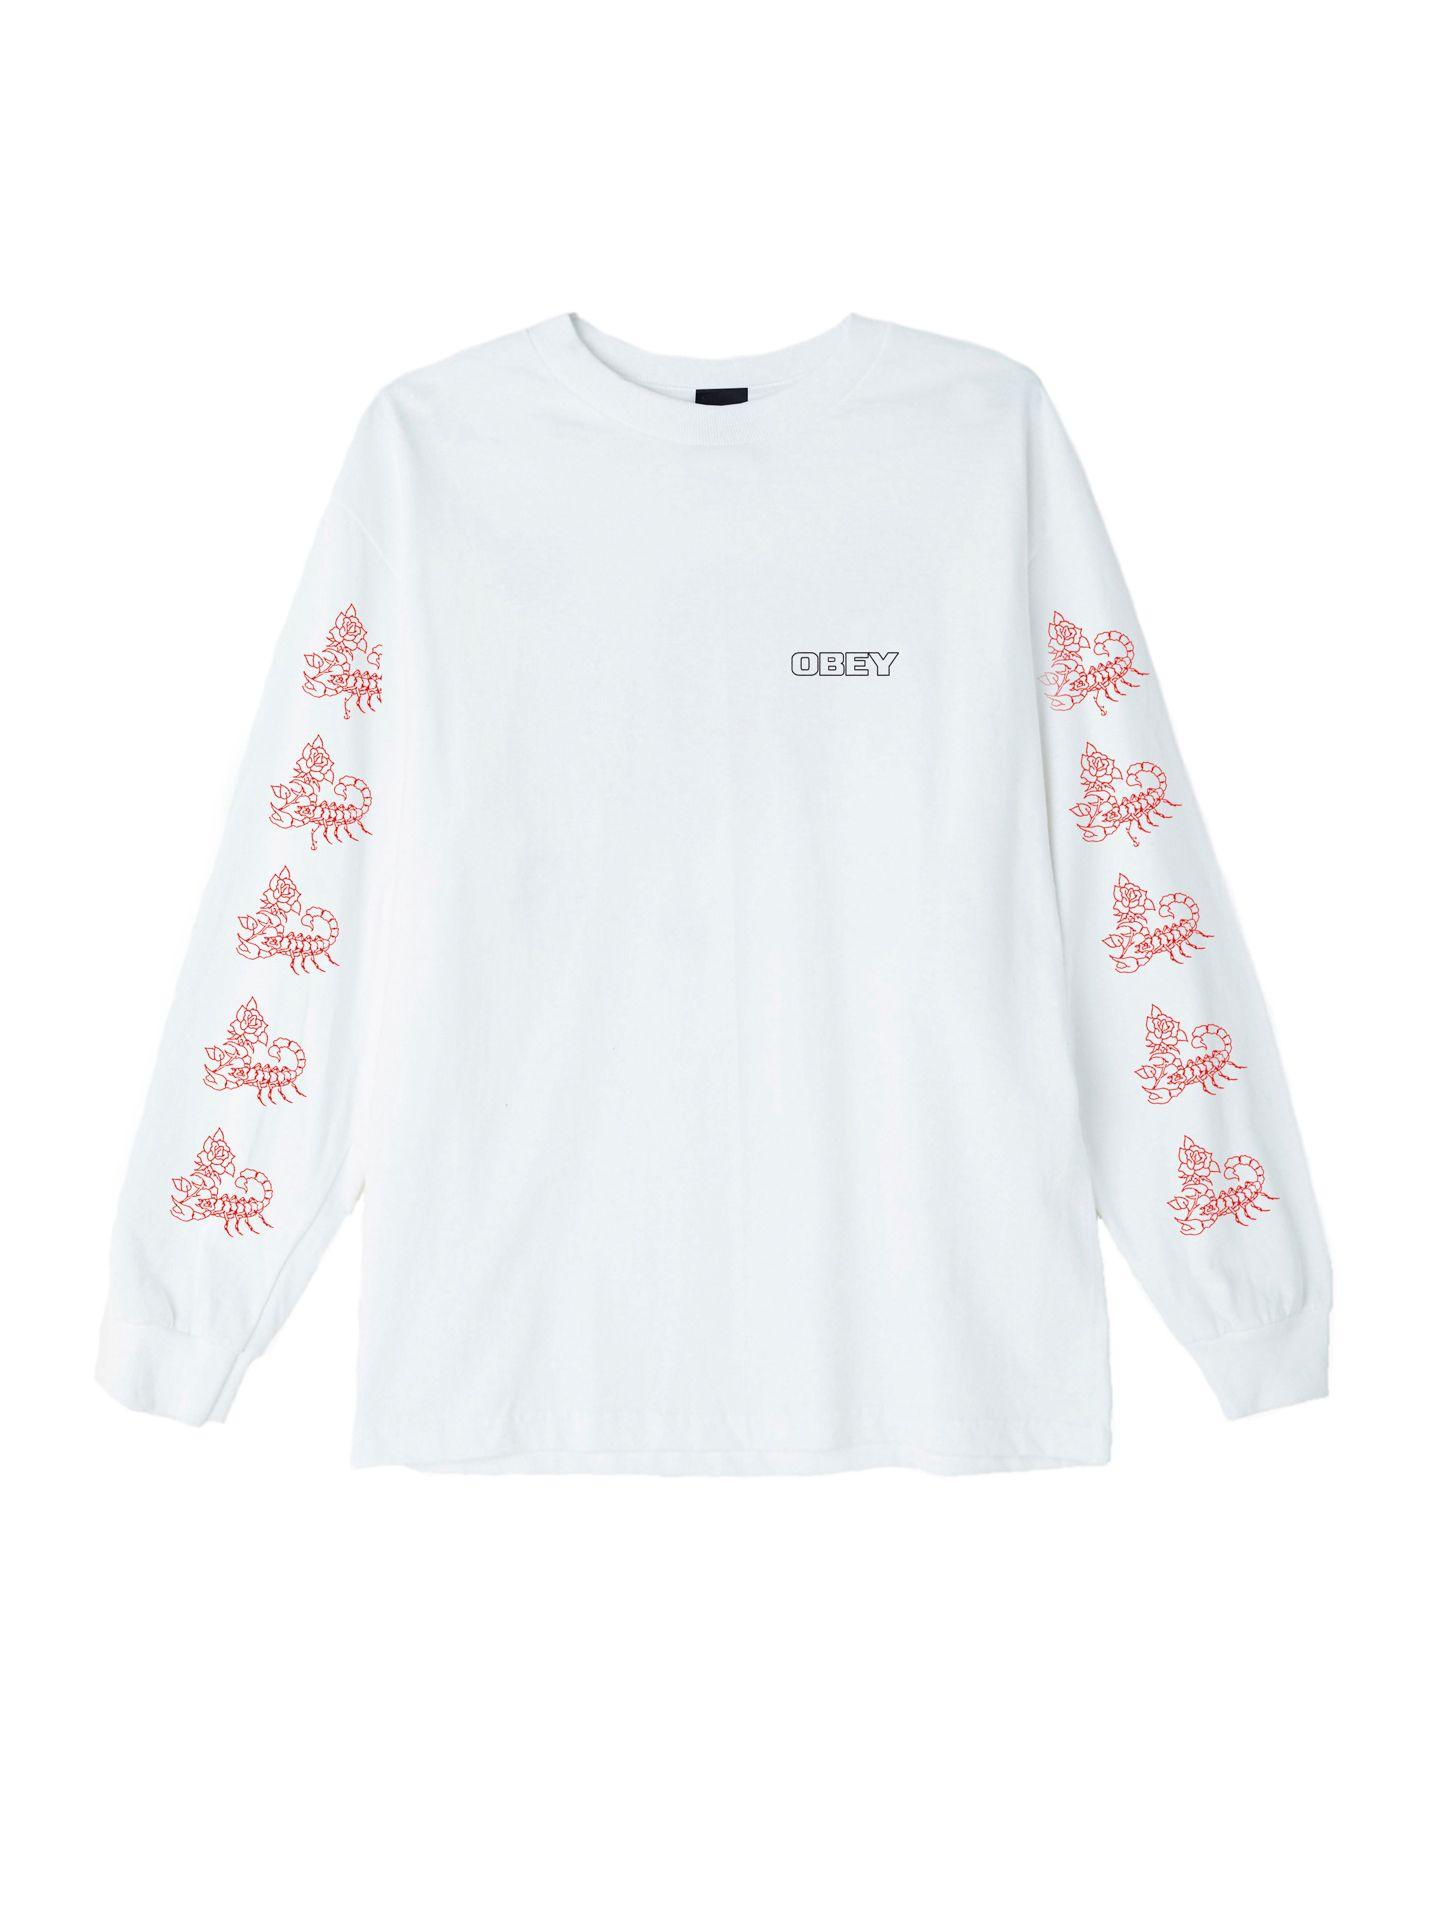 OBEY Clothing Rose Logo - Scorpion Rose Basic Long Sleeve T Shirt Clothing UK